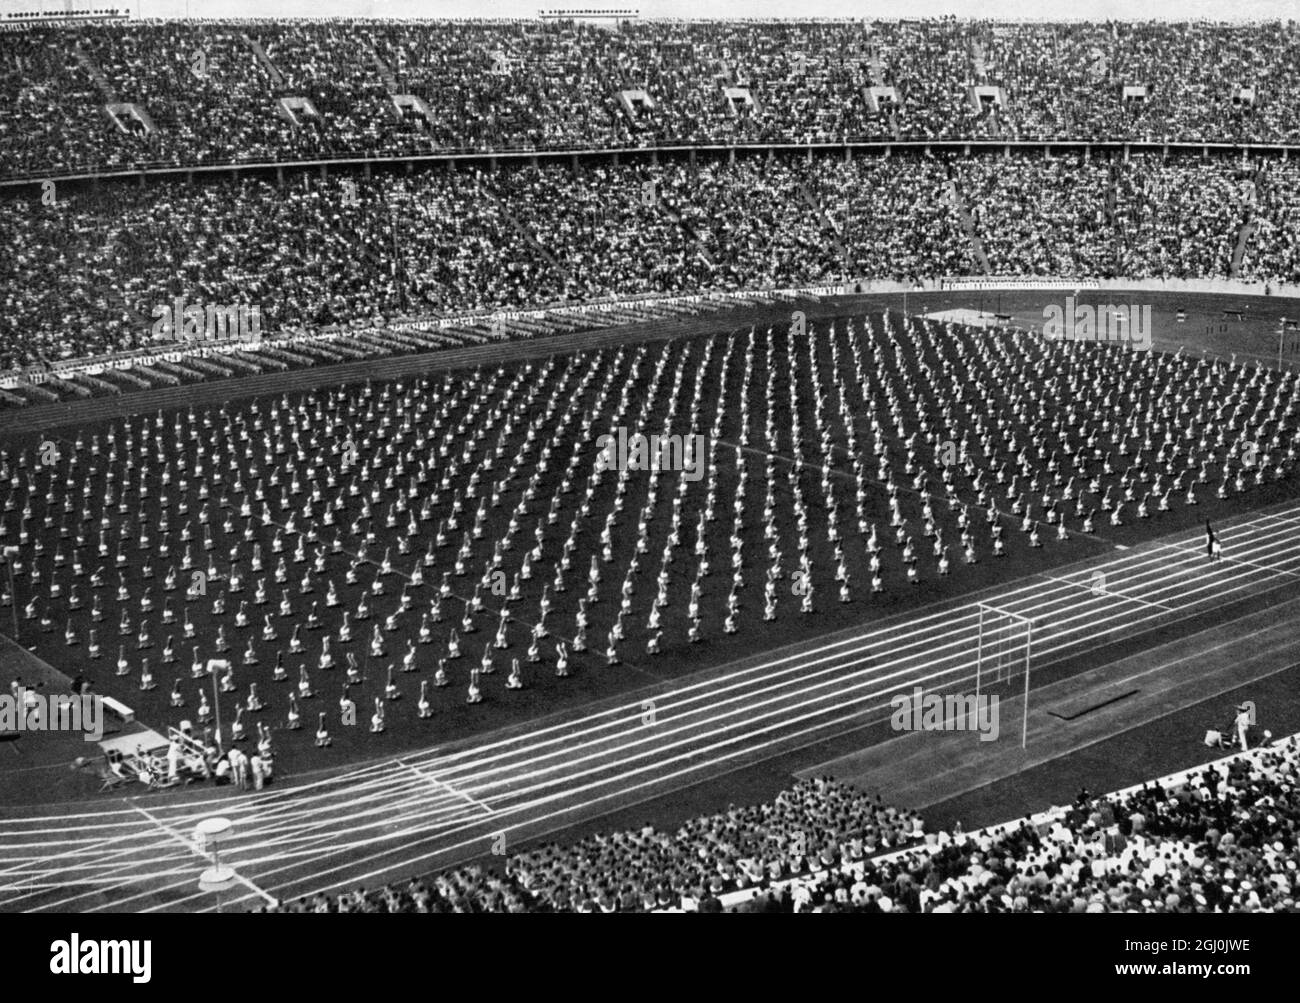 Olympia 1936, Berlin - die Turnroutine der Deutschen im vollen Olympiastadion hinterließ einen starken Eindruck. (Die praktischen Gymnastik-Vorführungen der deutschen Turner im vollbesetzten Olympiastadion hinterlassen einen starken Eindruck.) ©TopFoto Stockfoto